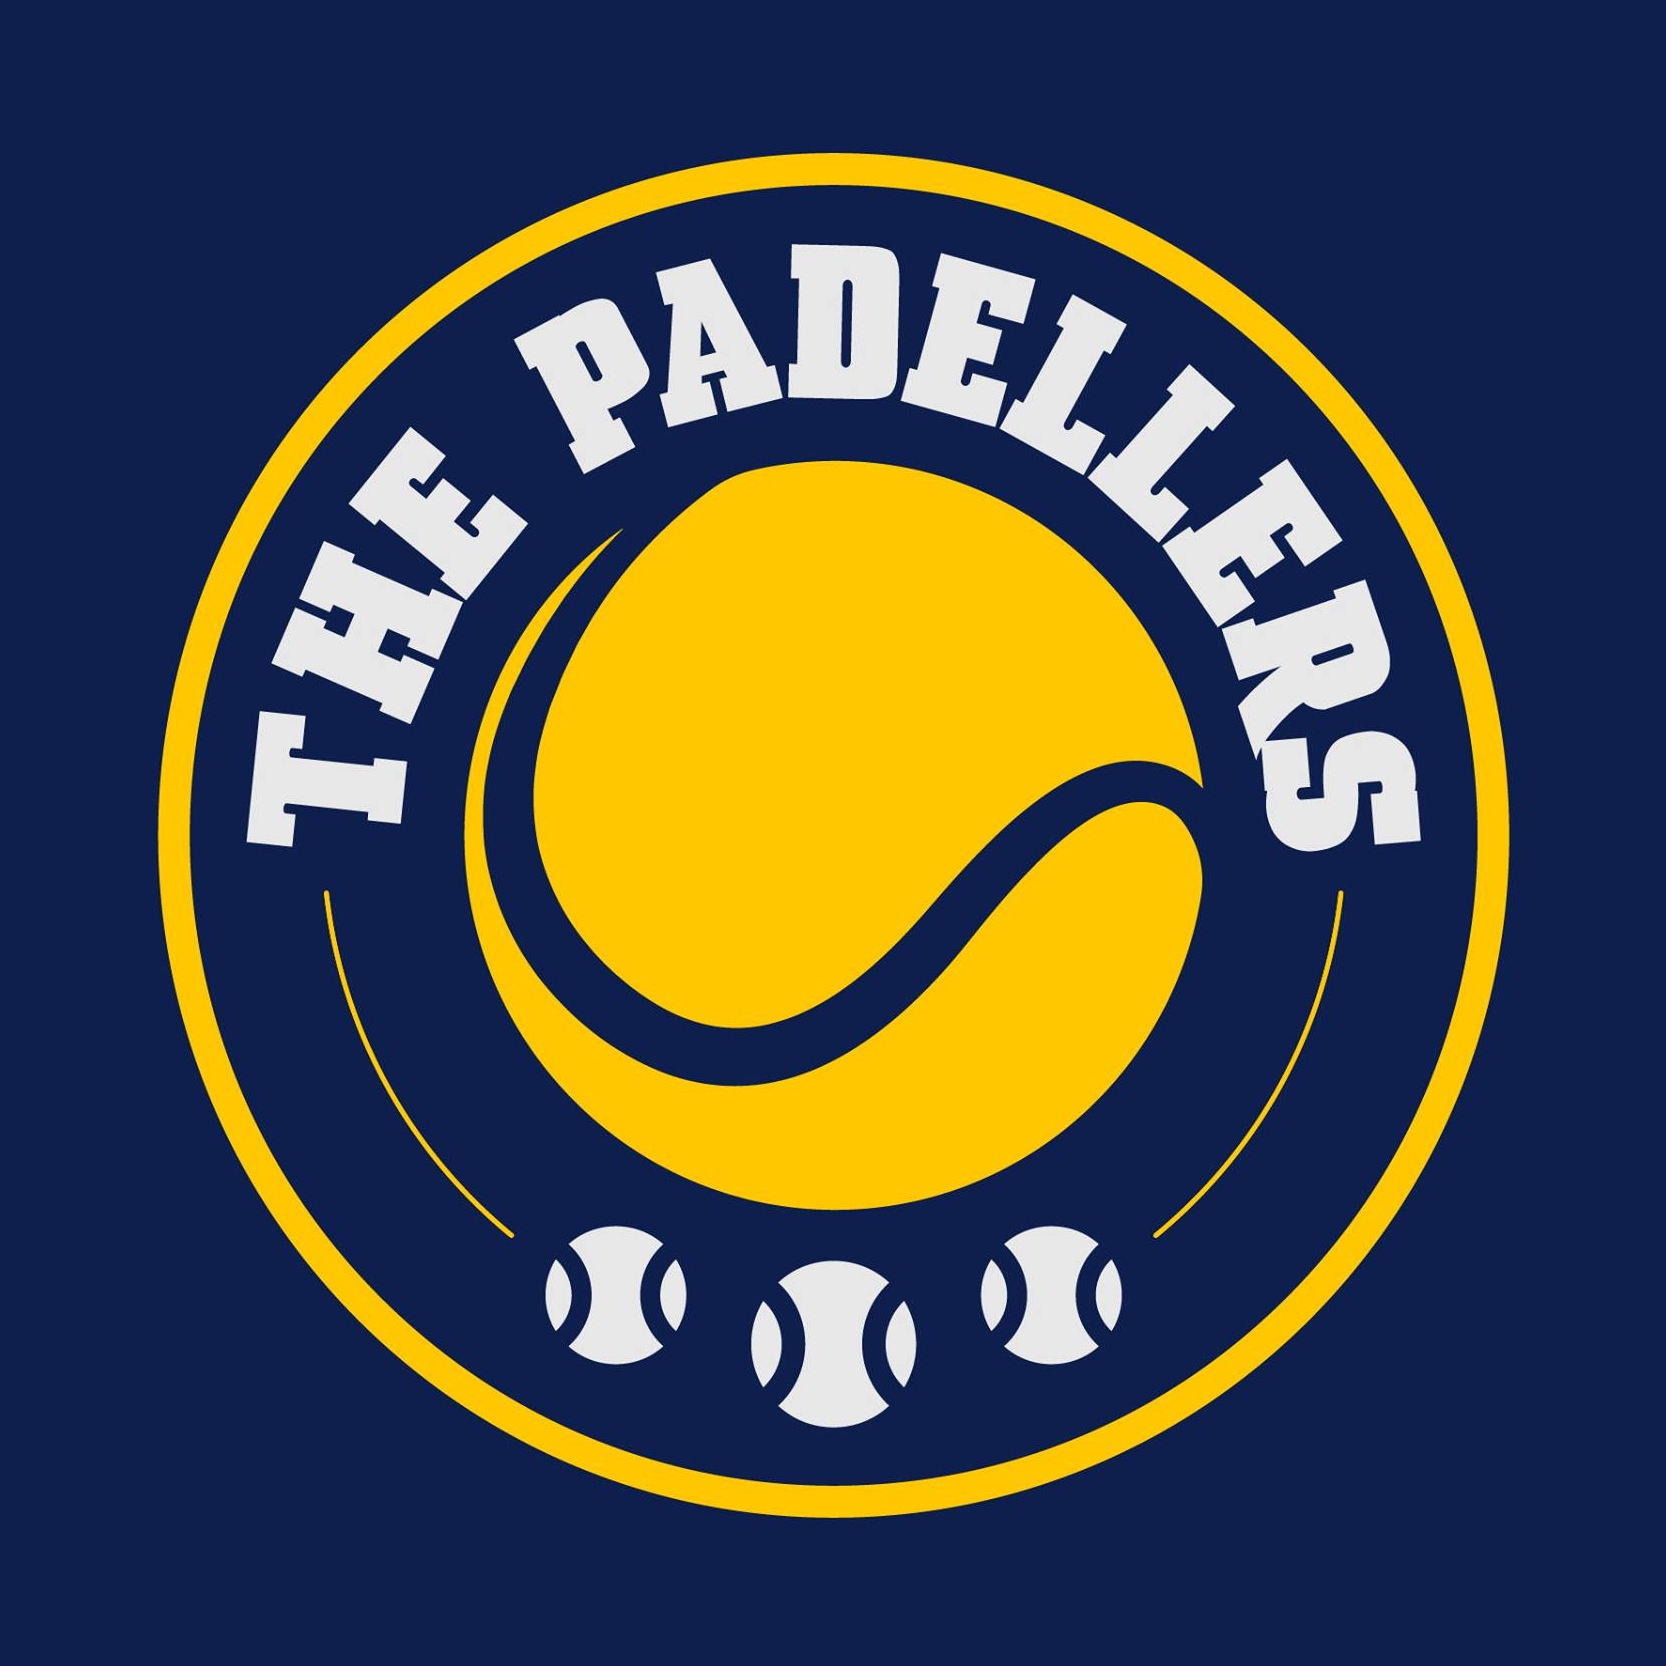 Profile image of venue The Padellers - Veldhoven